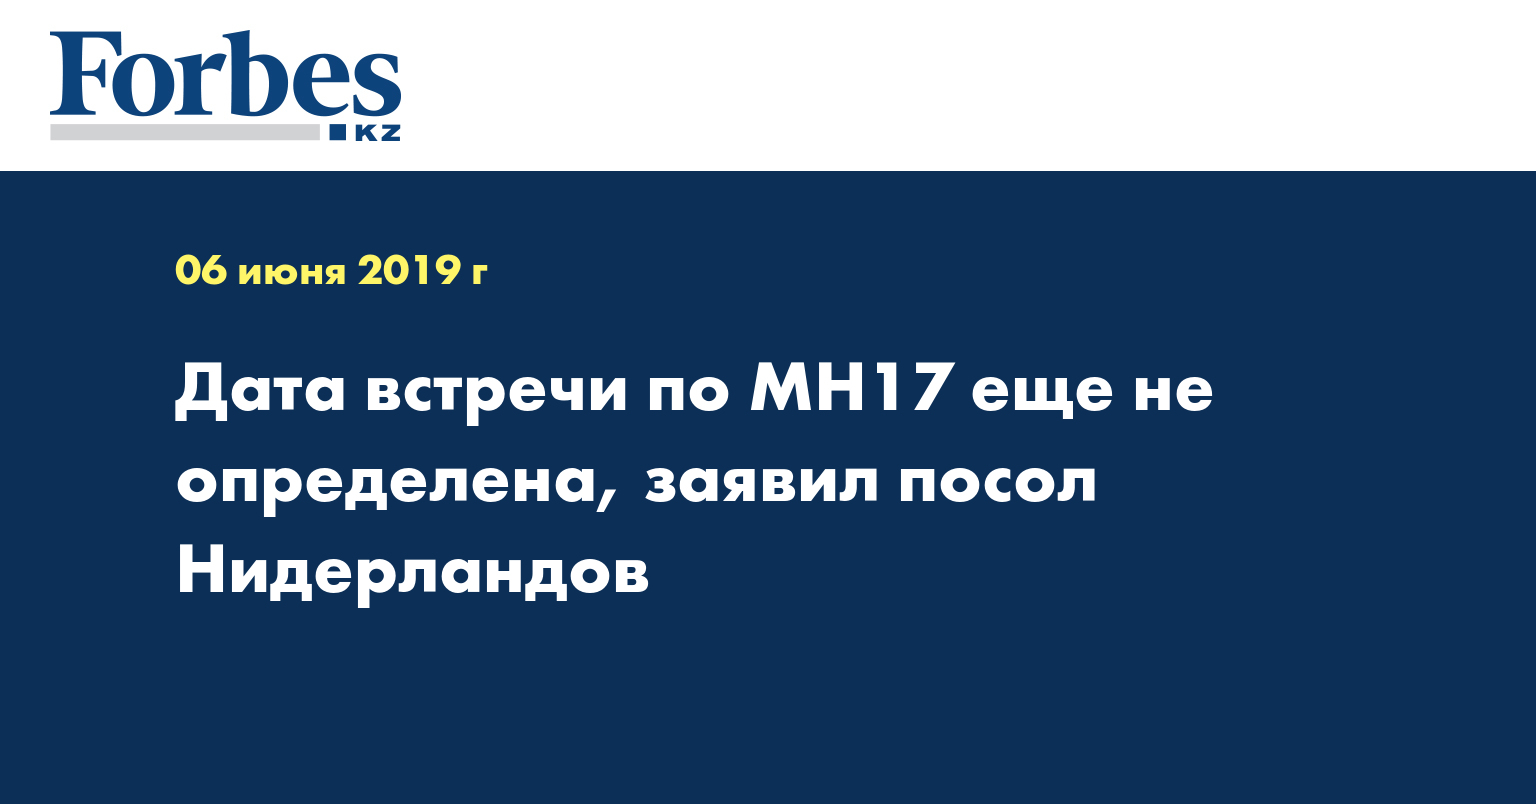 Дата встречи по MH17 еще не определена, заявил посол Нидерландов